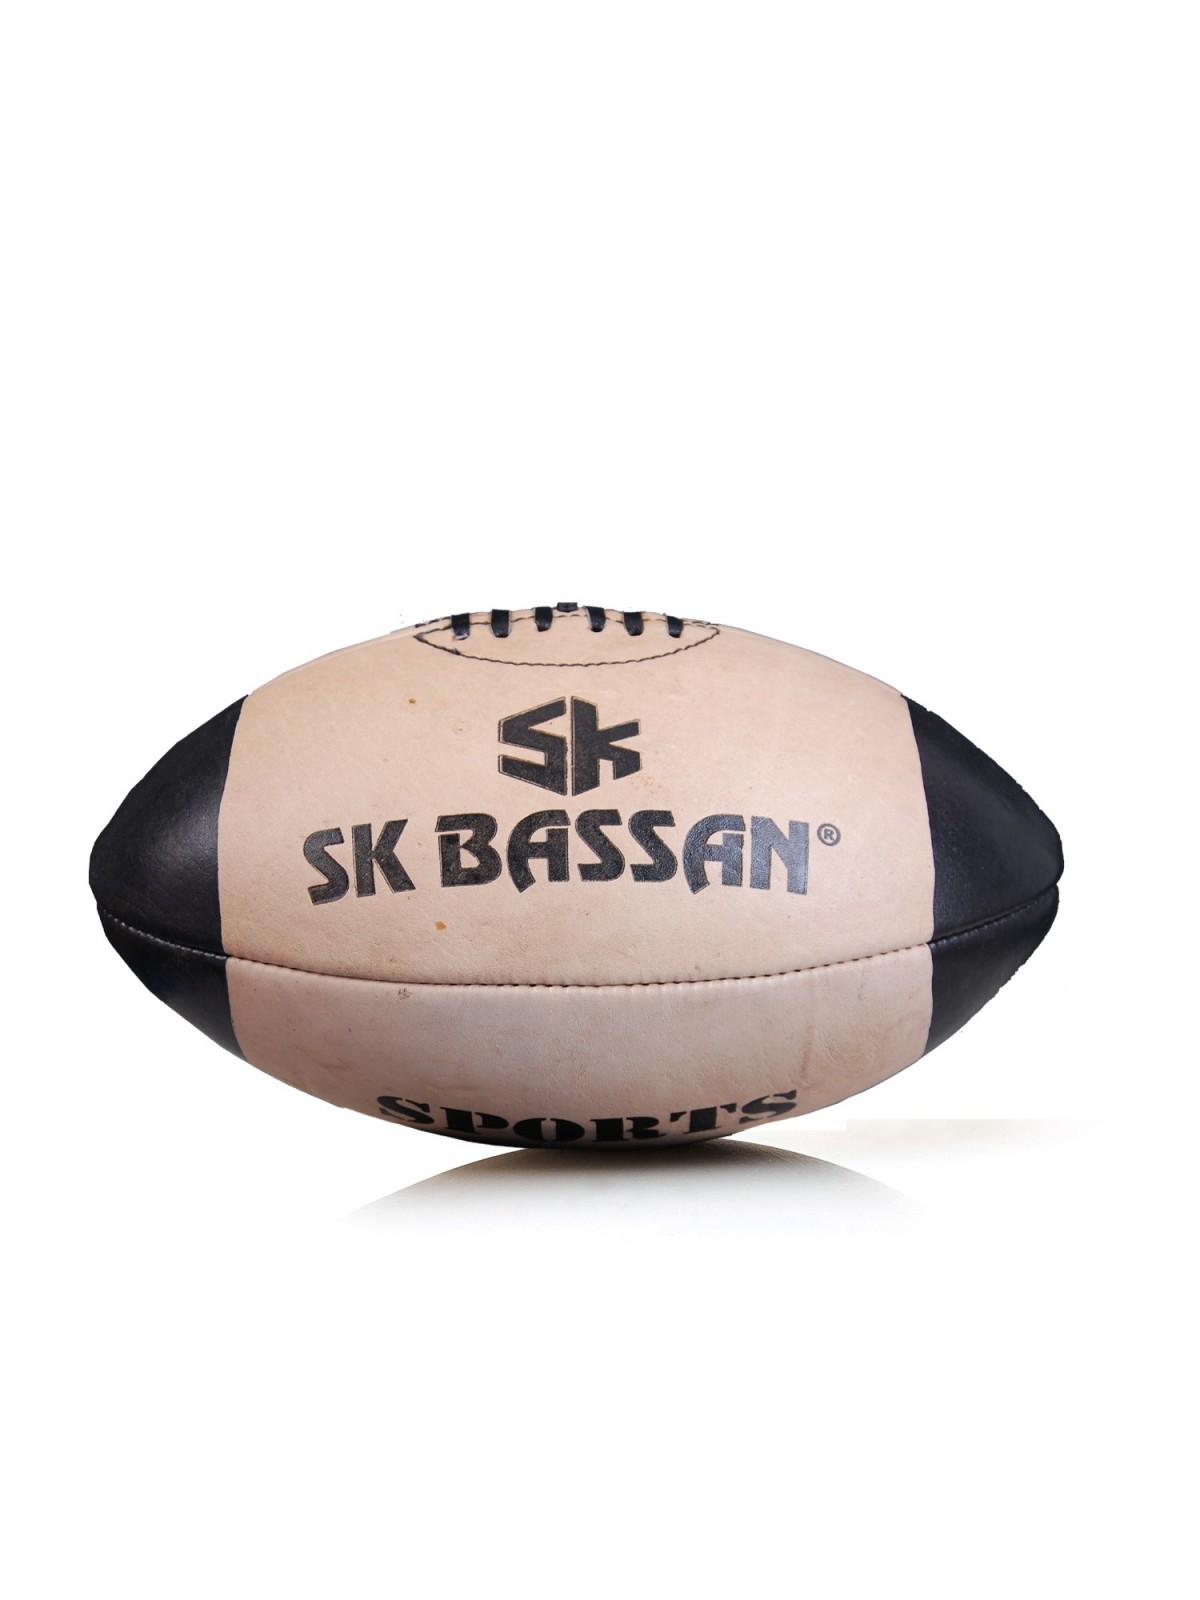 52-055 Balle de rugby en cuir personnalisé